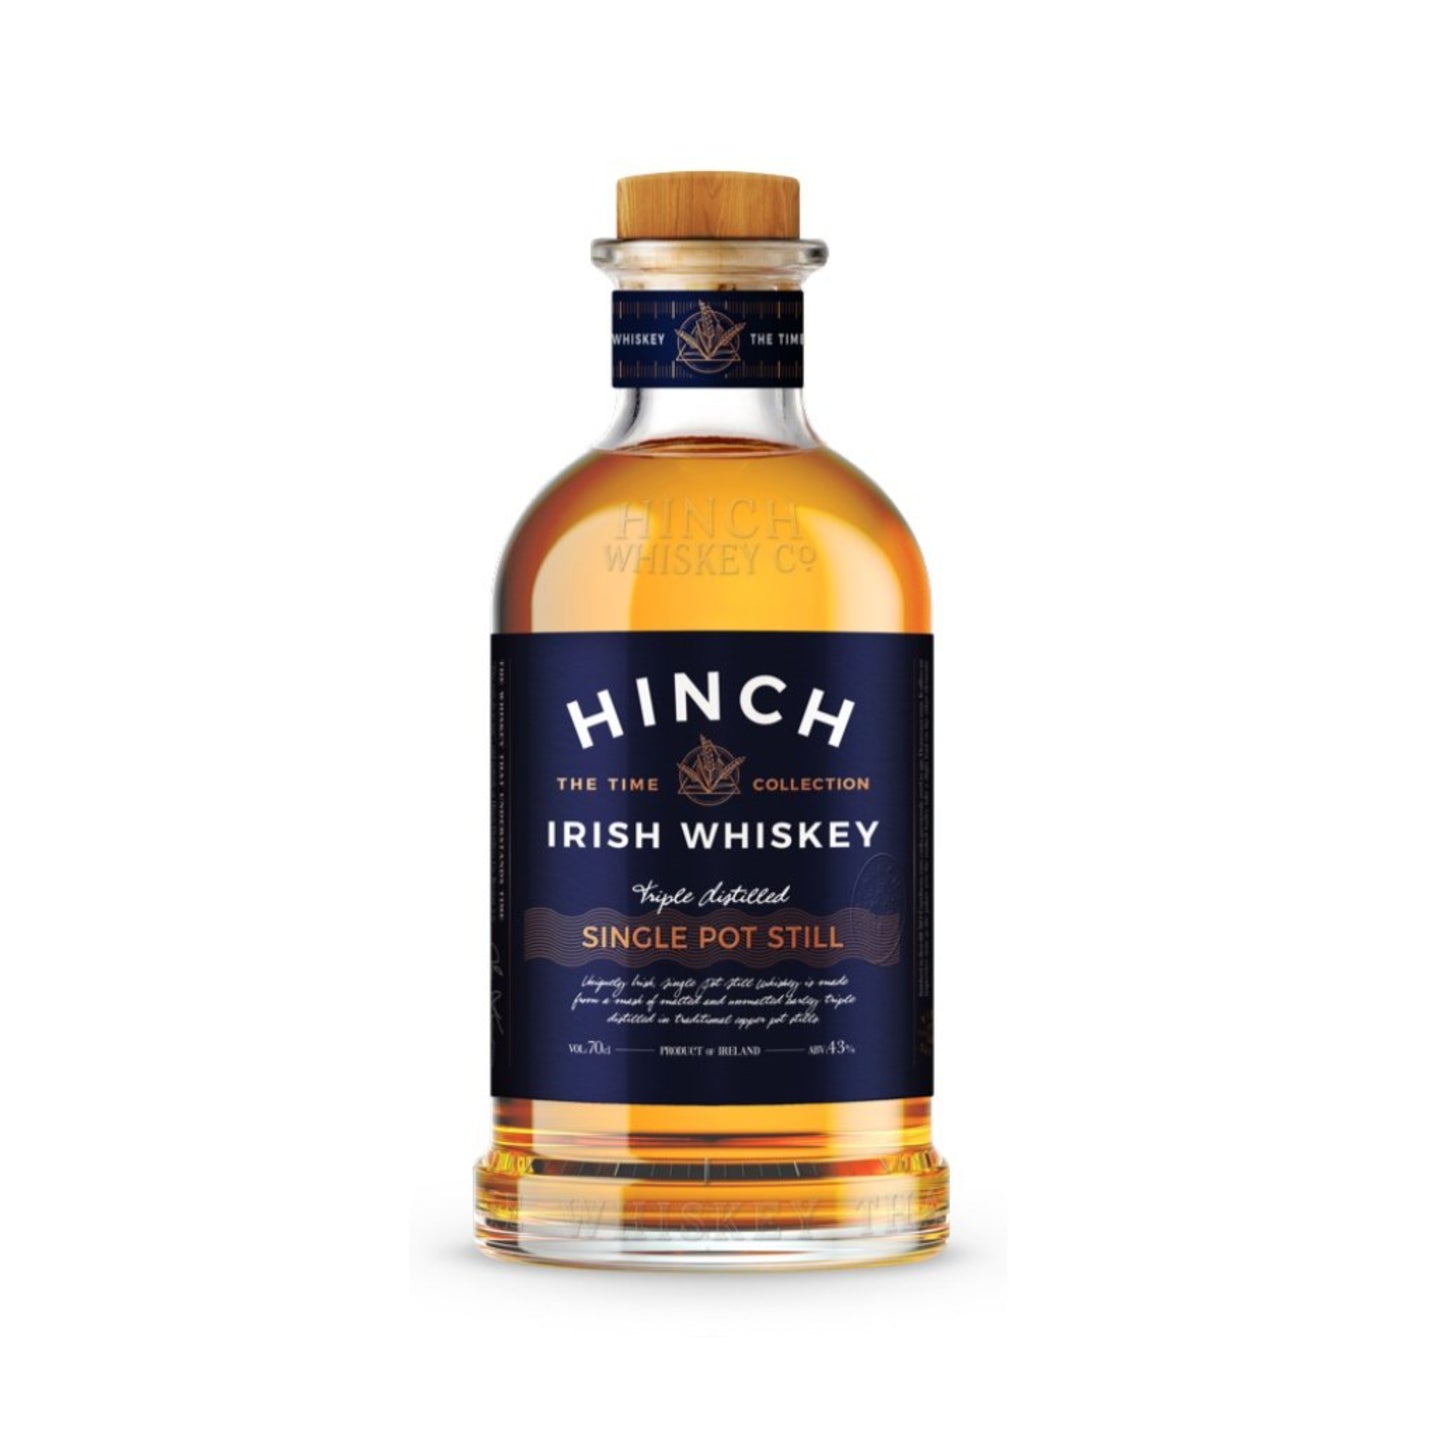 Hinch Single Pot Still - Liquor Geeks